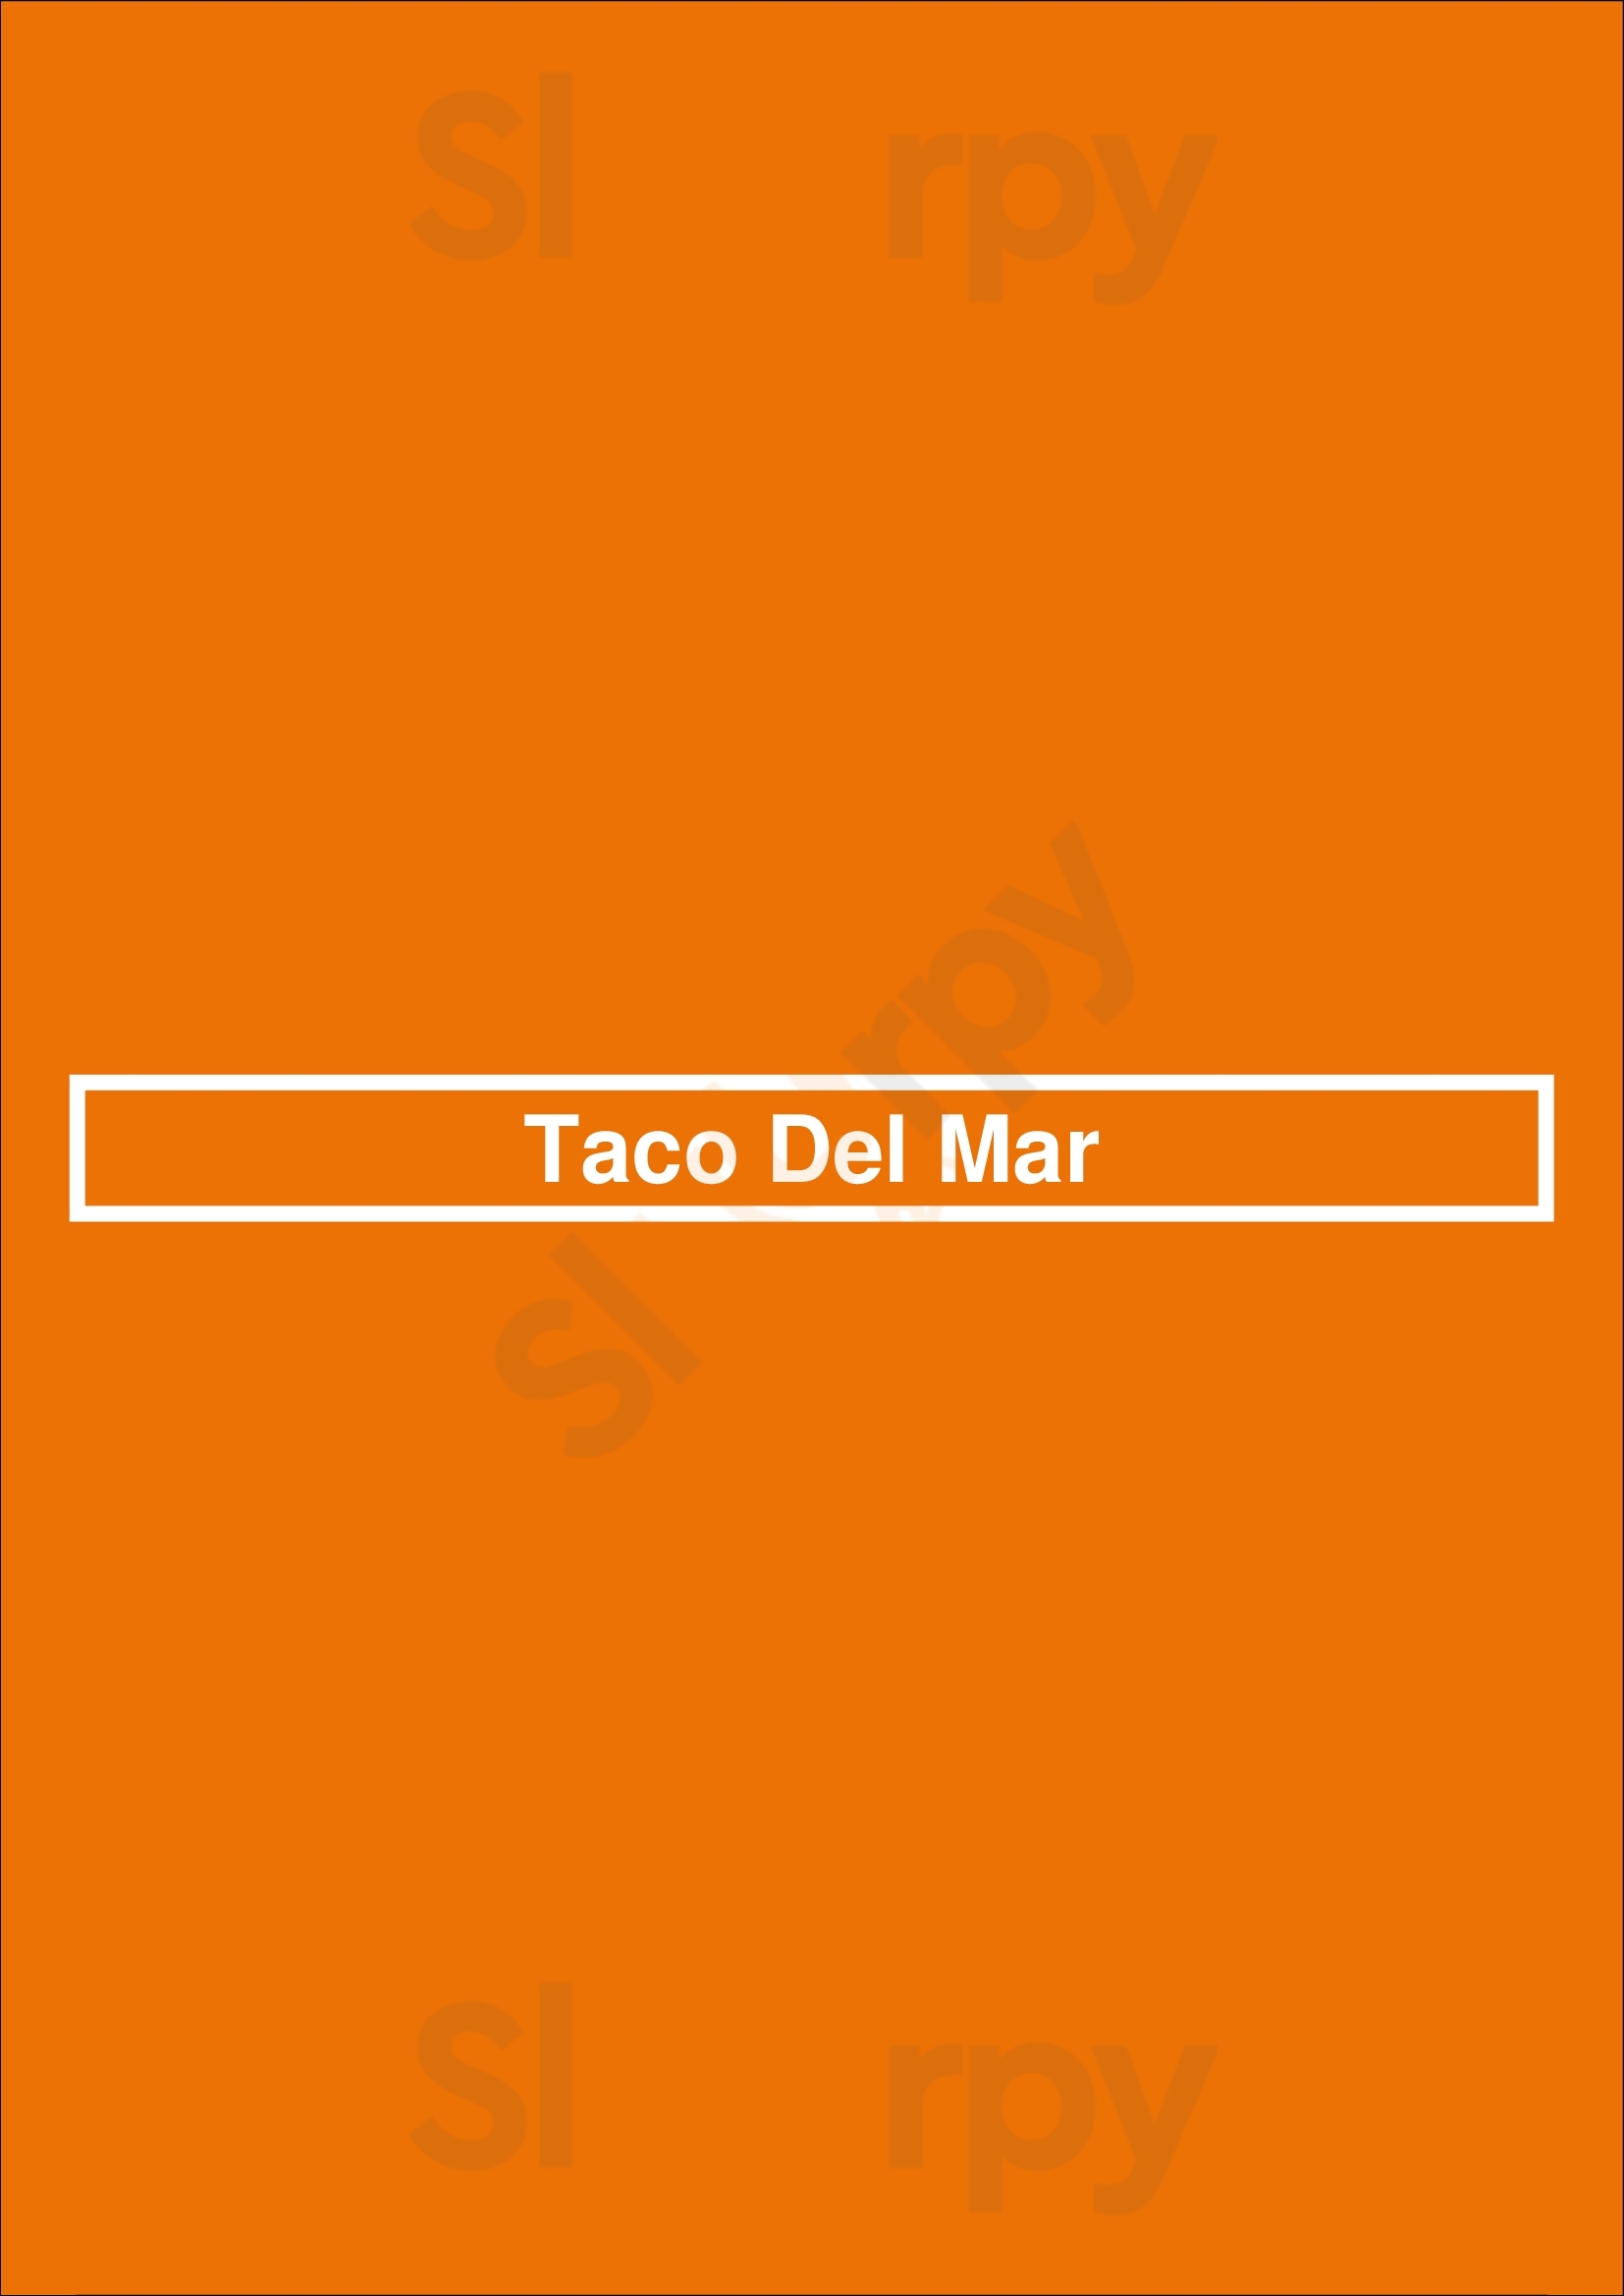 Taco Del Mar Seattle Menu - 1